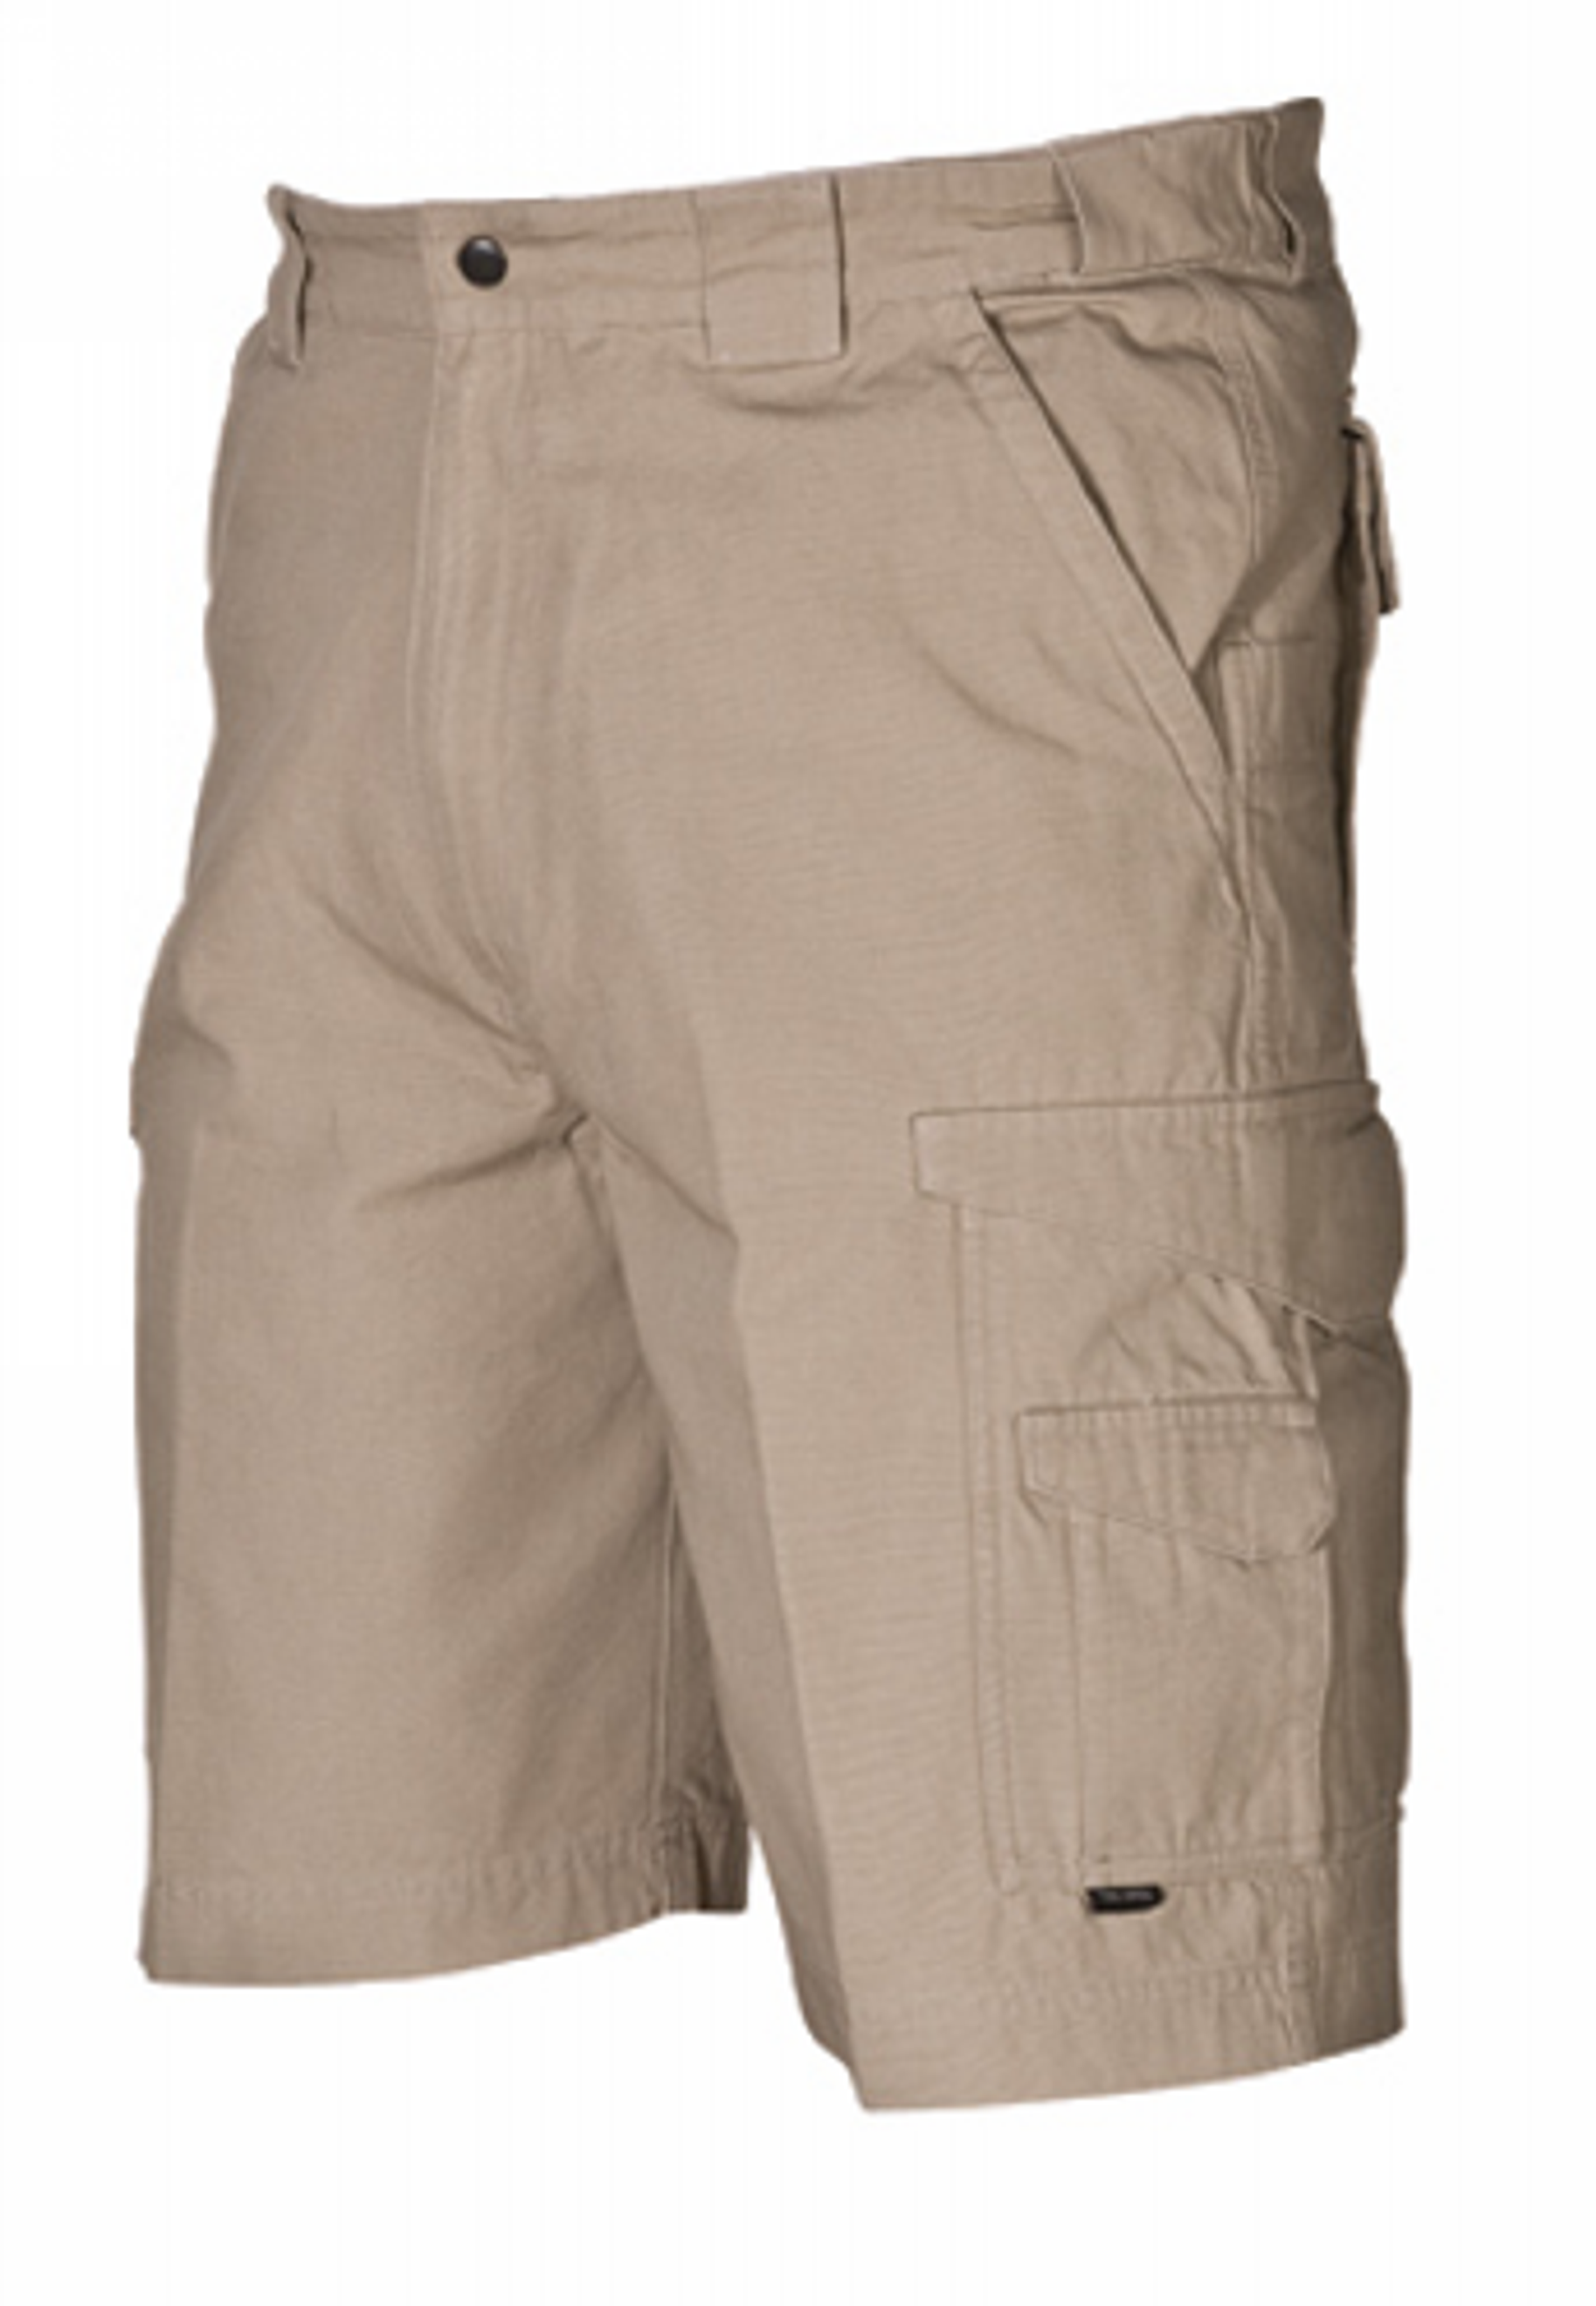 Original Tactical Shorts - KRTSP-4268006